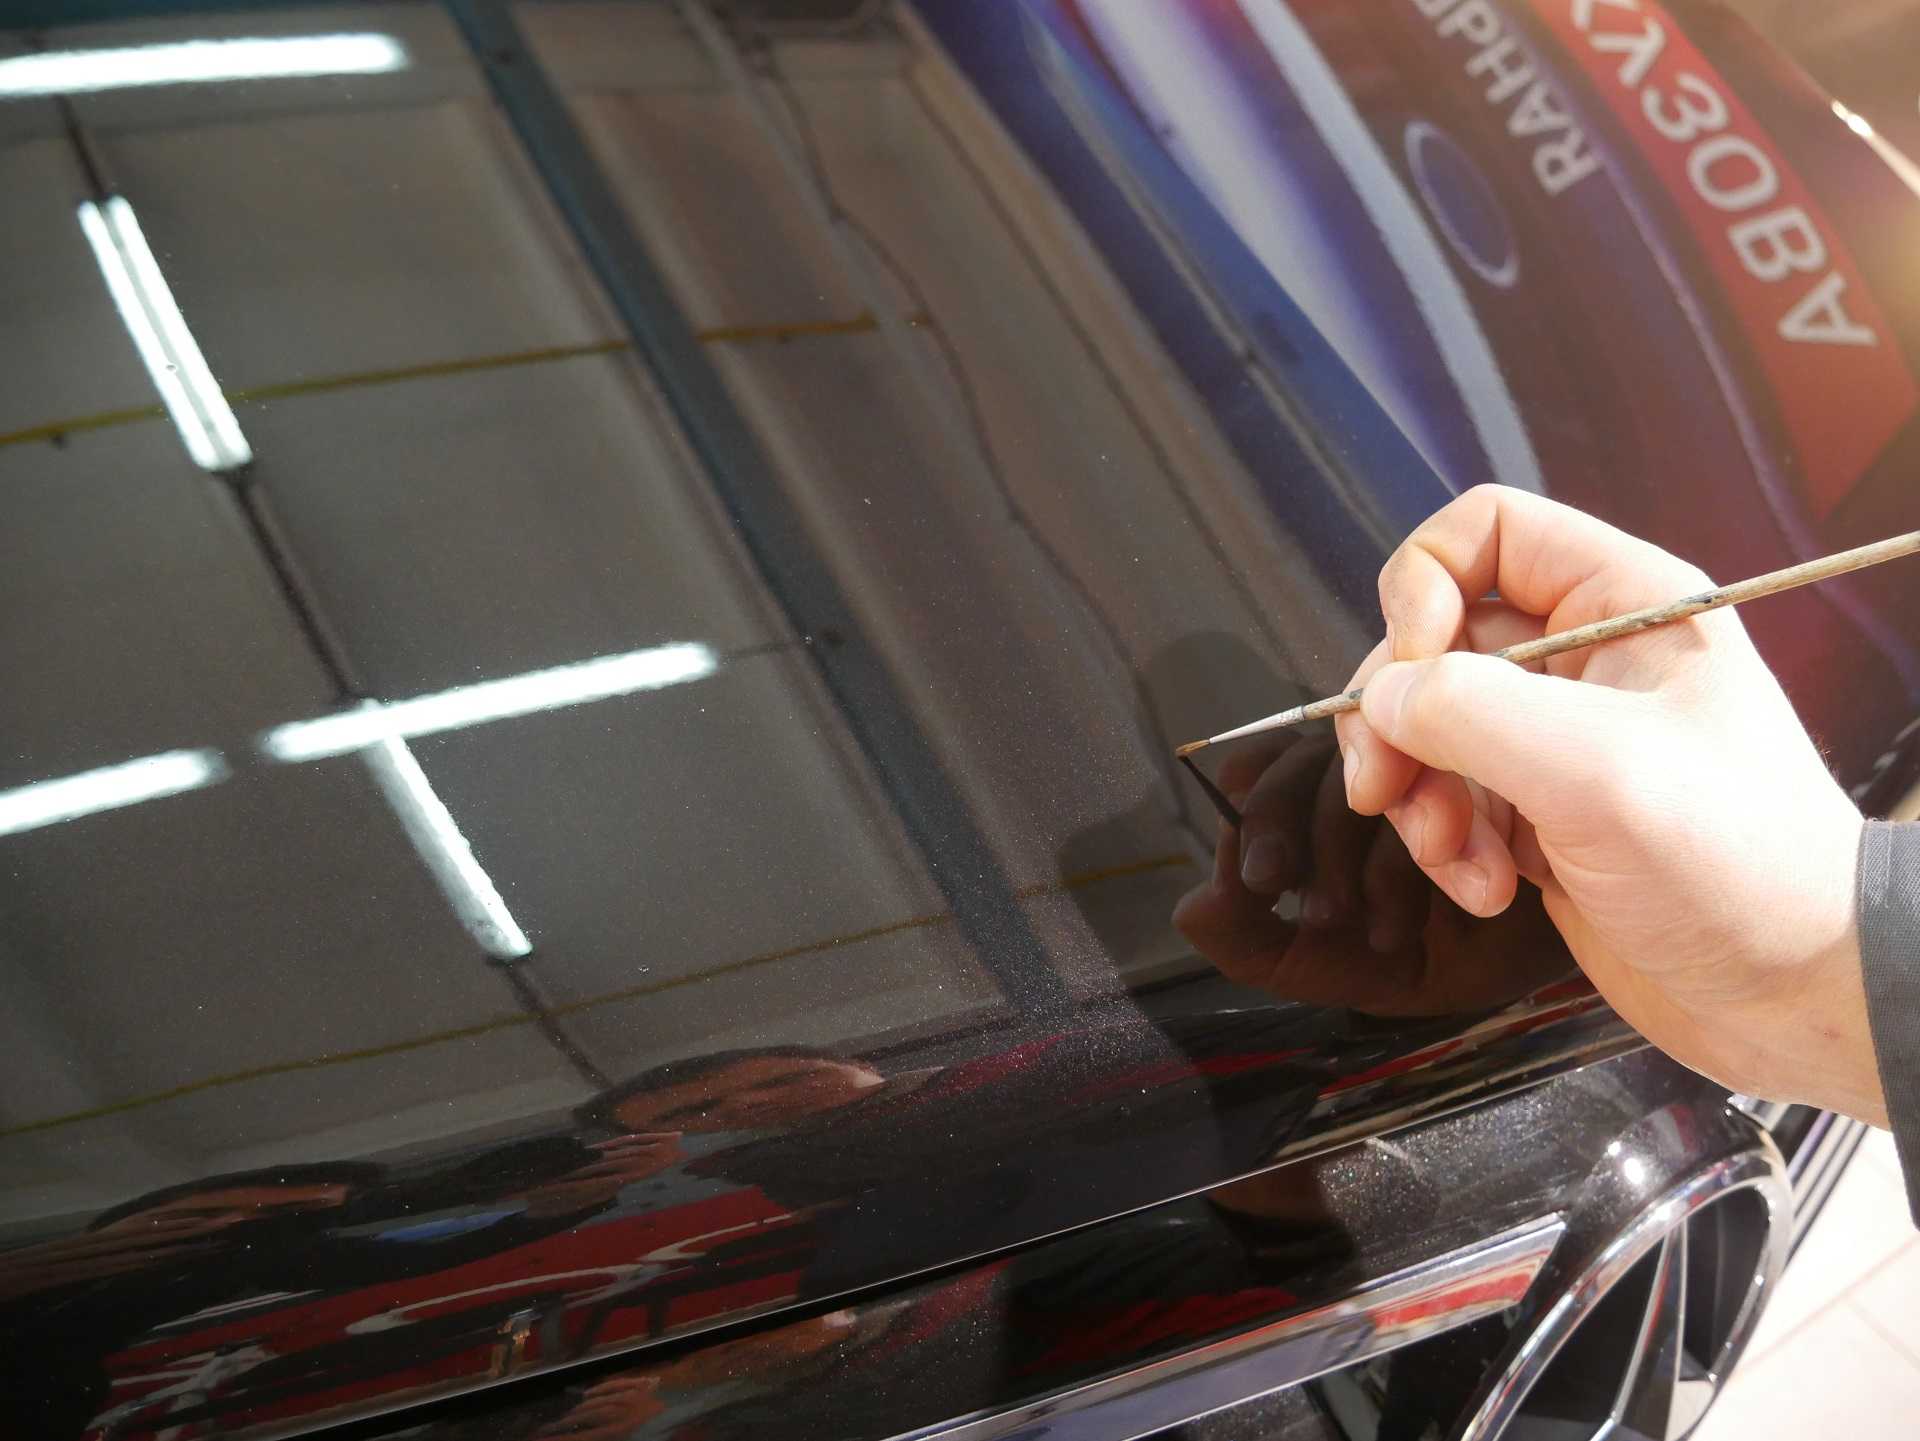 Как удалить царапины на стекле автомобиля?